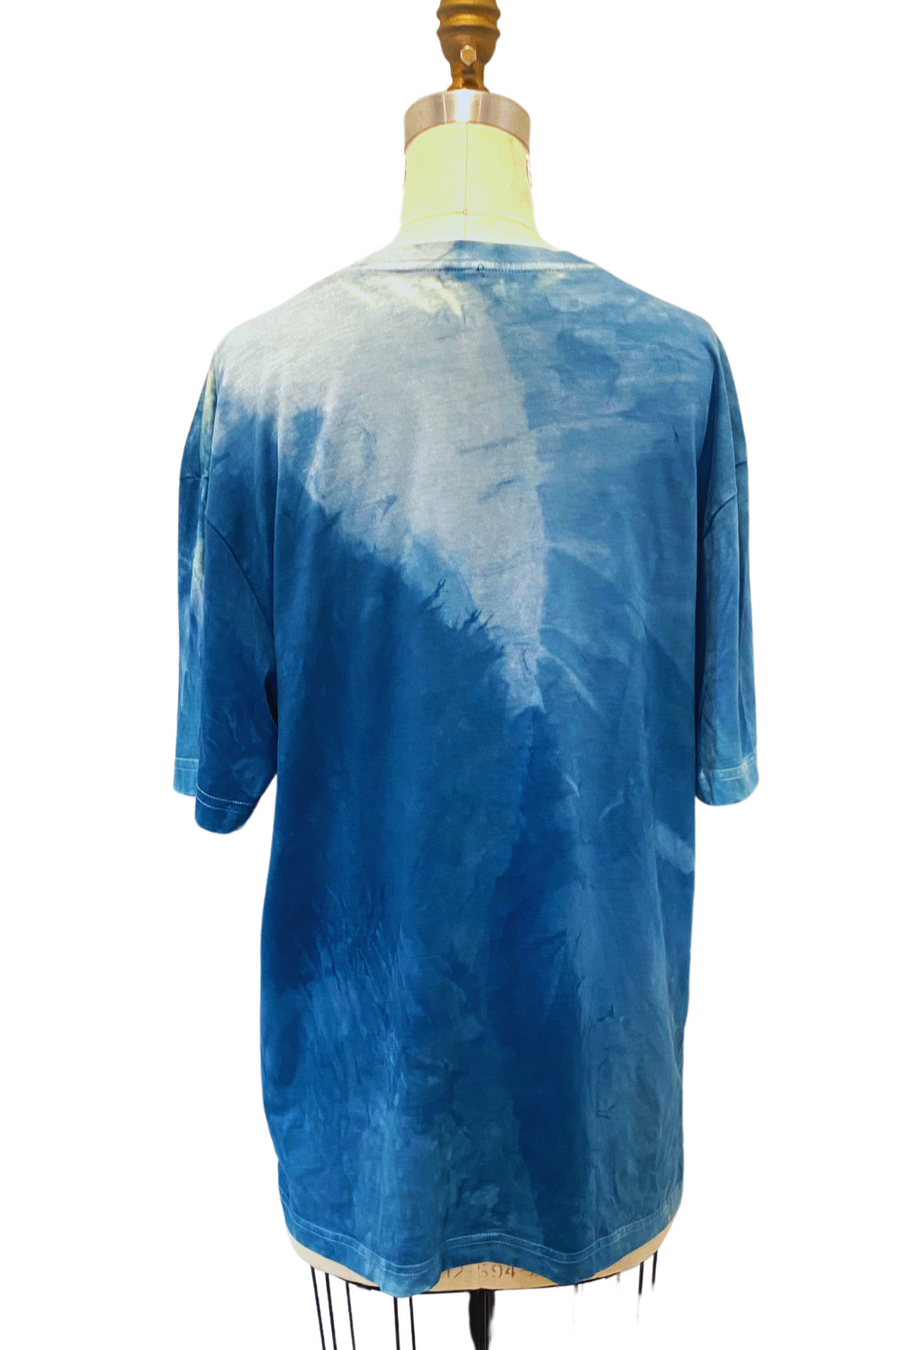 Botanically Dyed Crew Neck T shirt in Blue, Size Large